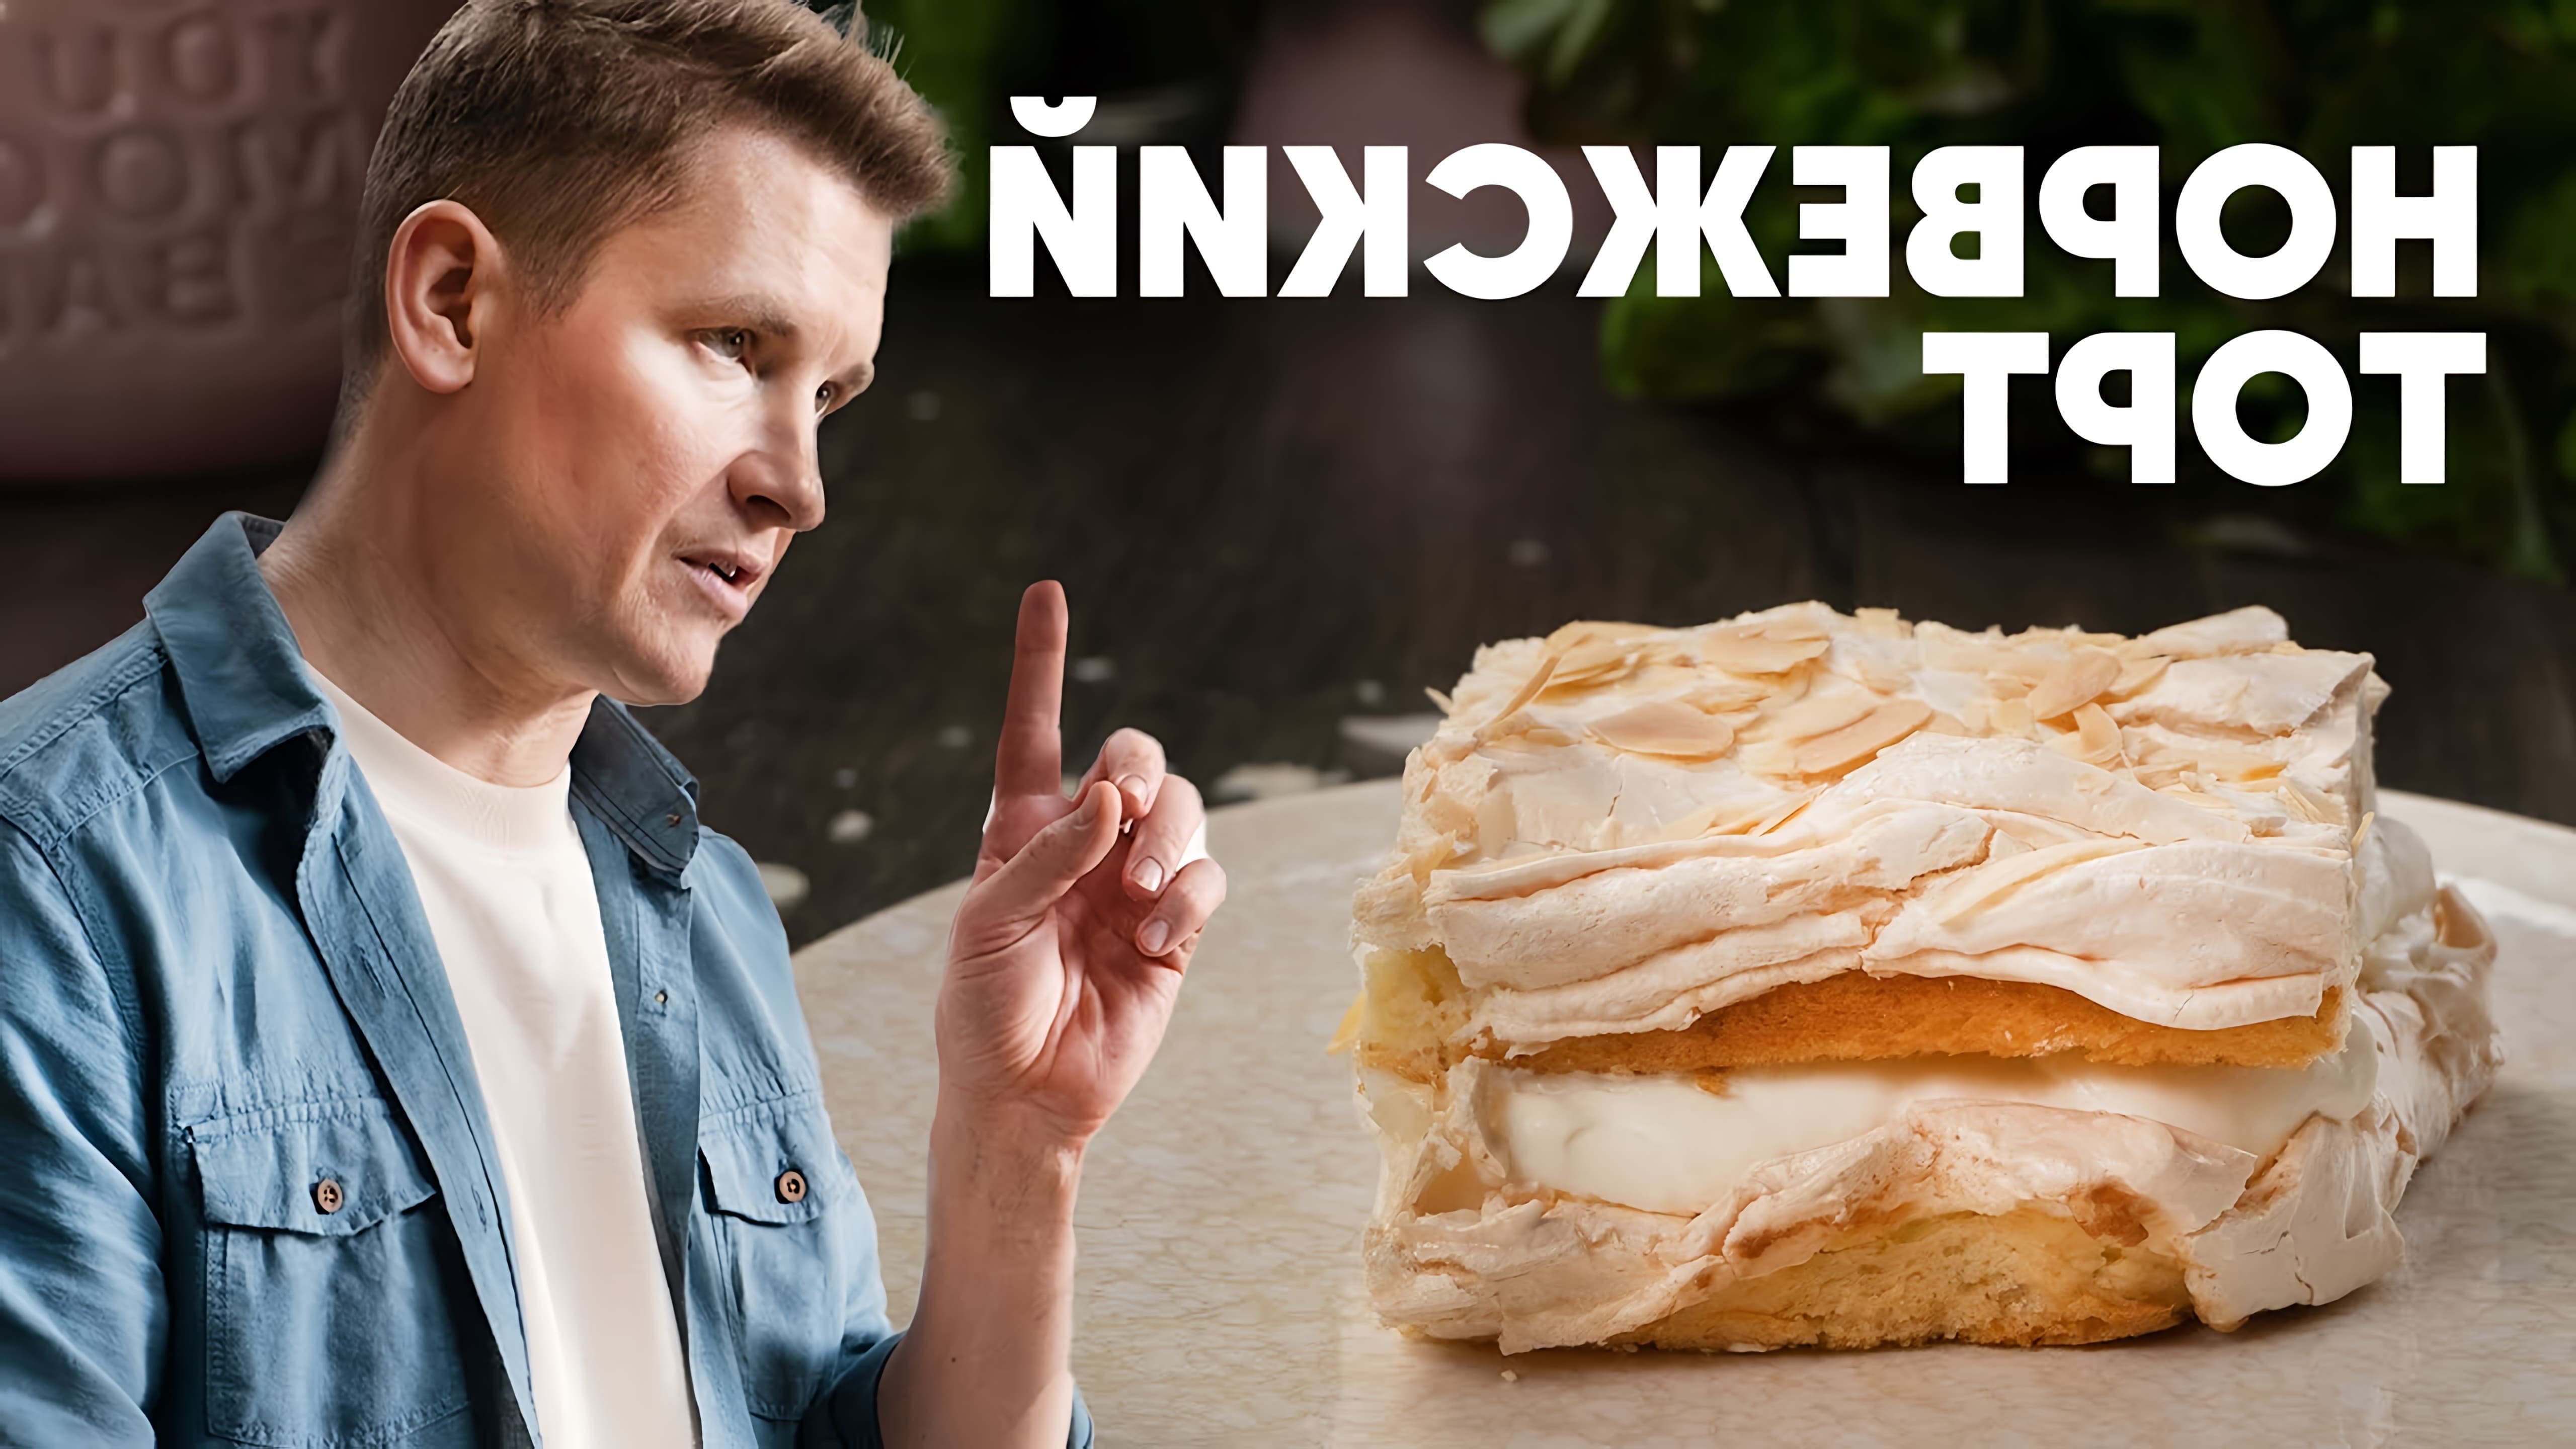 В этом видео шеф-повар Белькович показывает, как приготовить норвежский торт